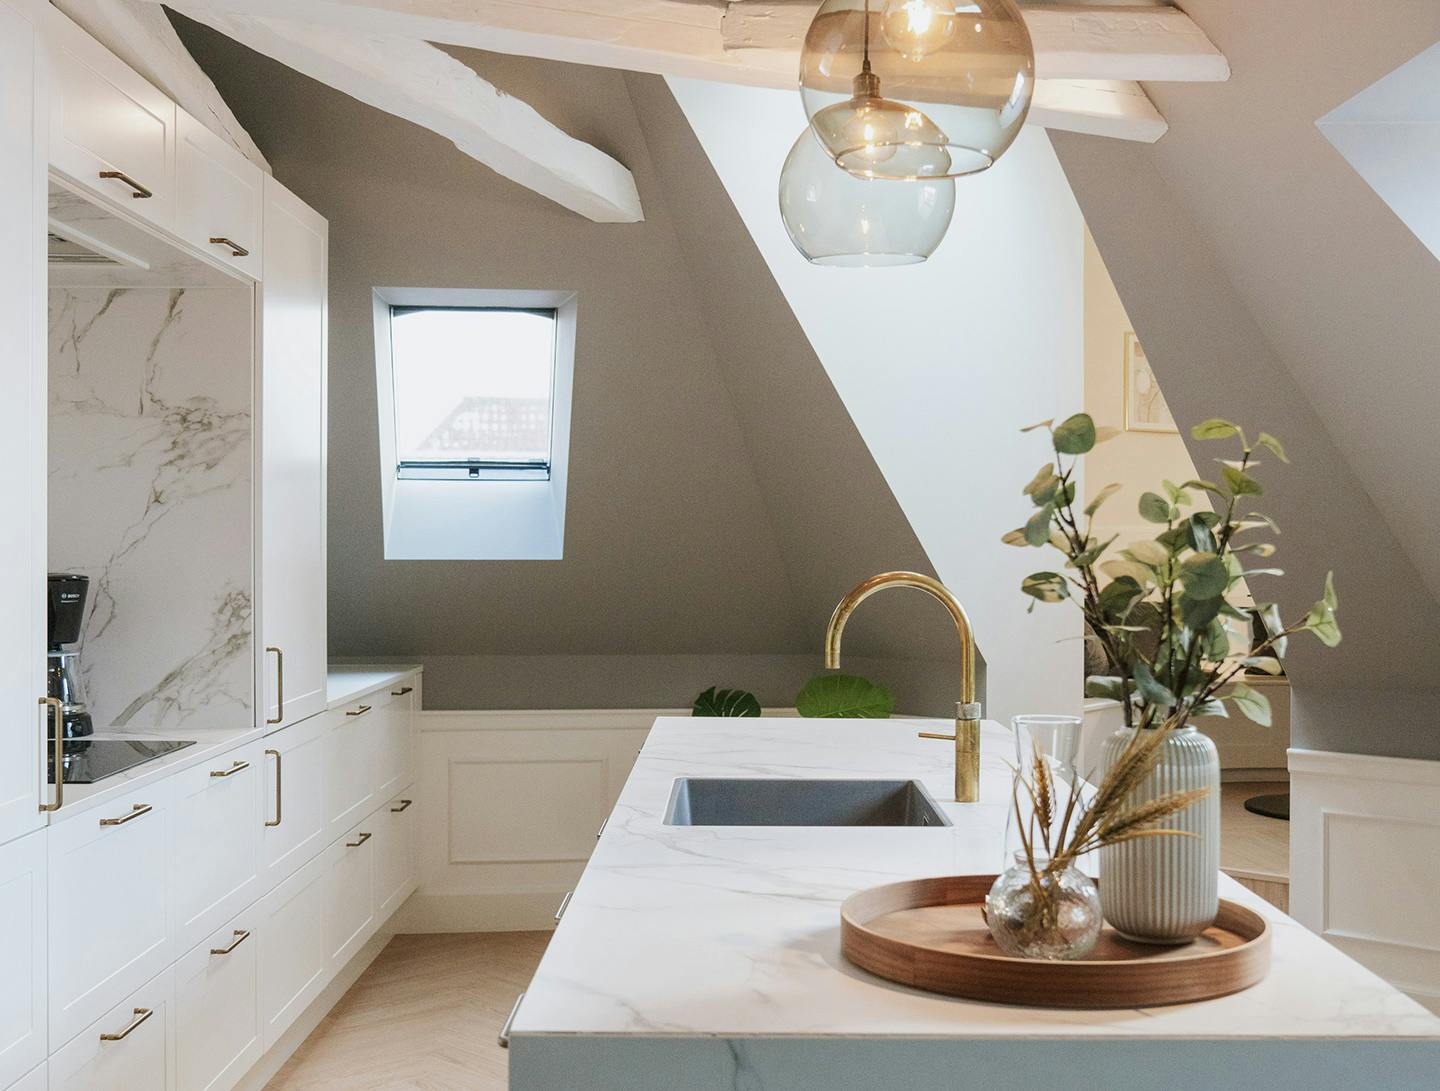 Numero immagine 38 della sezione corrente di Interior designer Katja Suominen chose DKTN Rem countertops for her new kitchen di Cosentino Italia